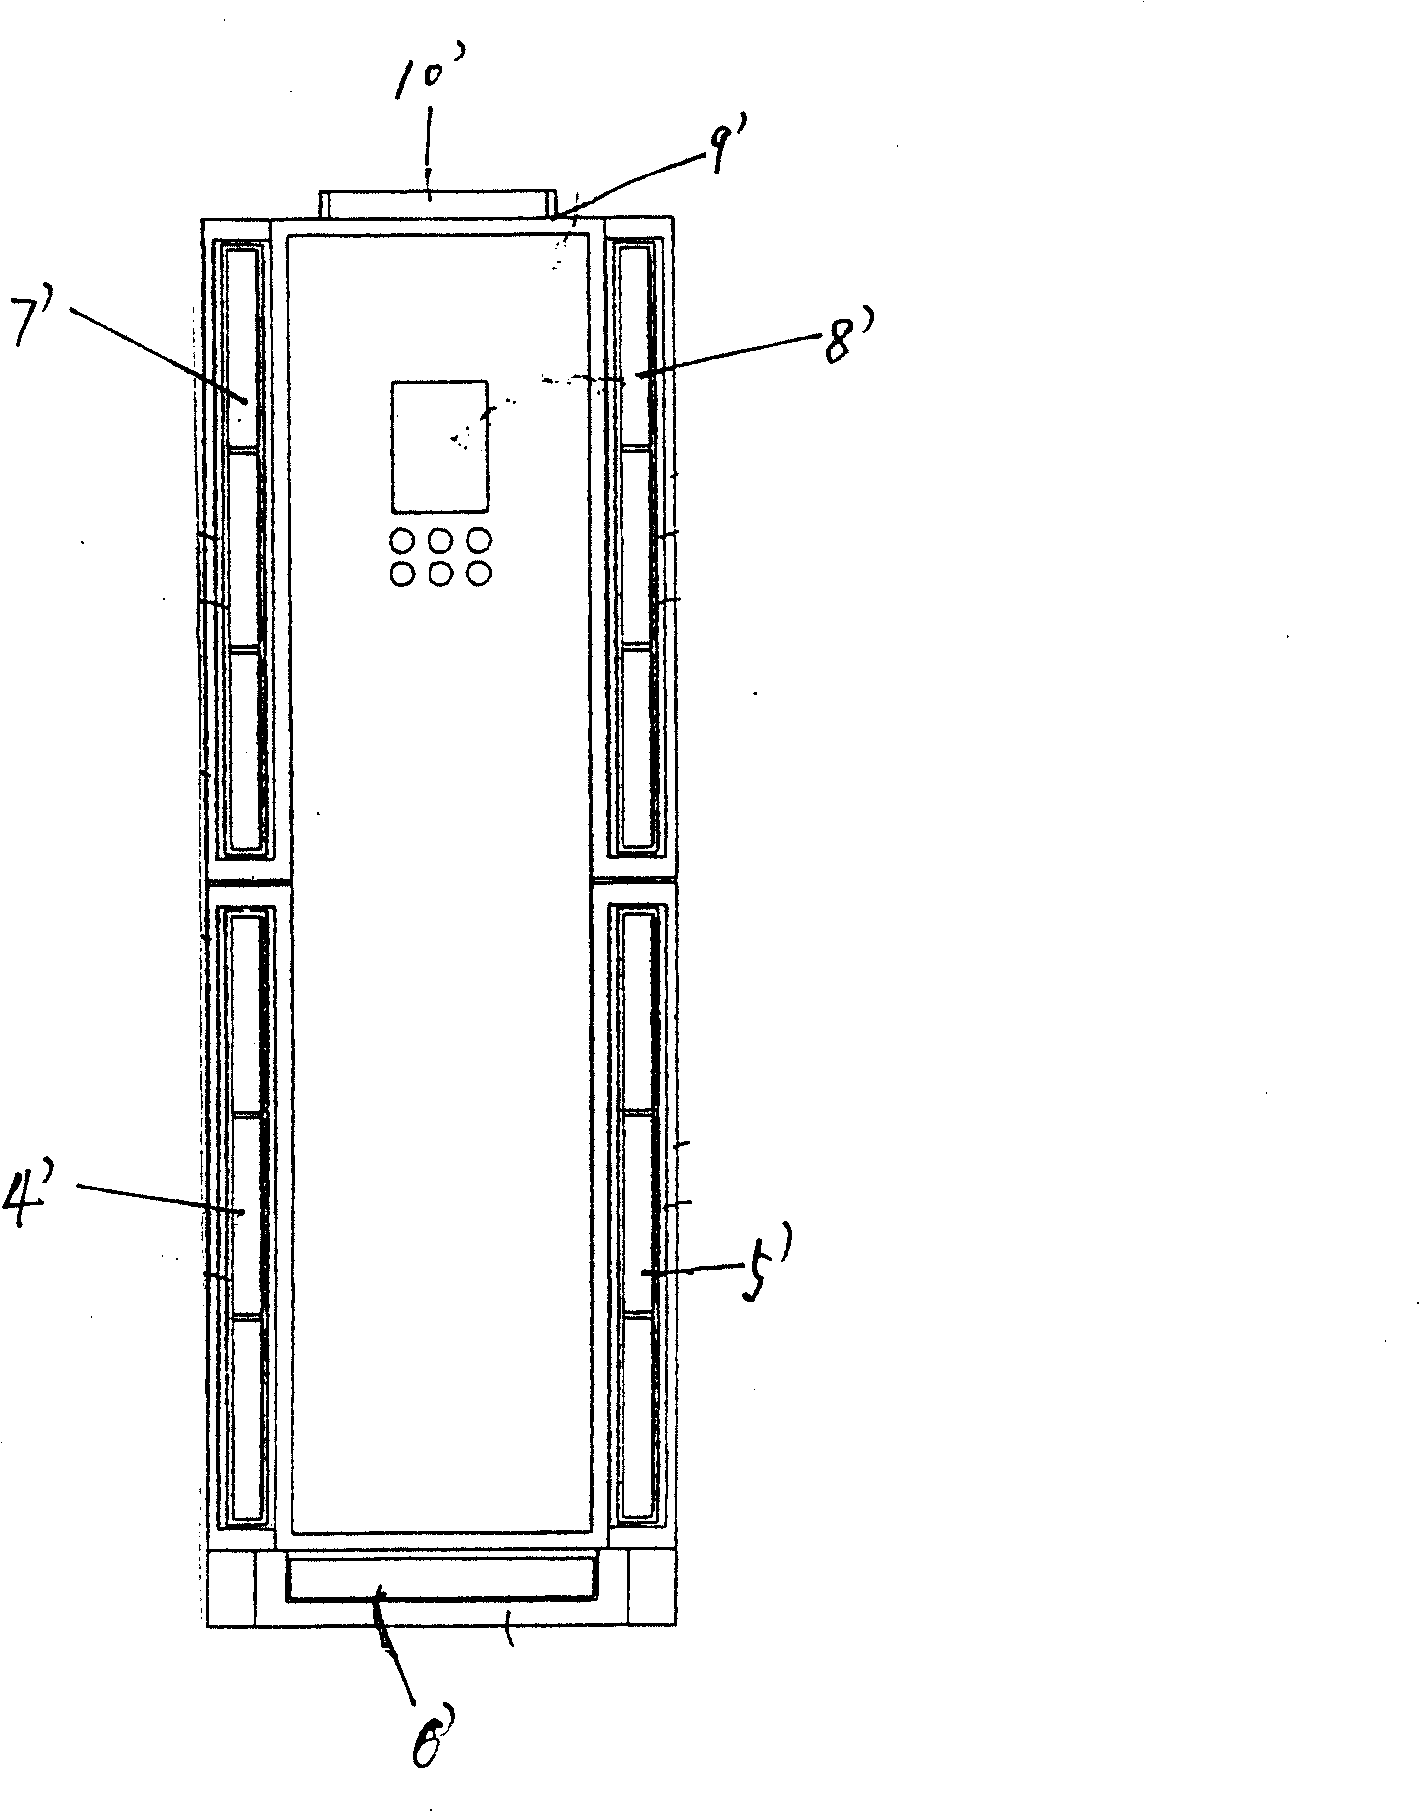 Indoor unit of cabinet type air conditioner